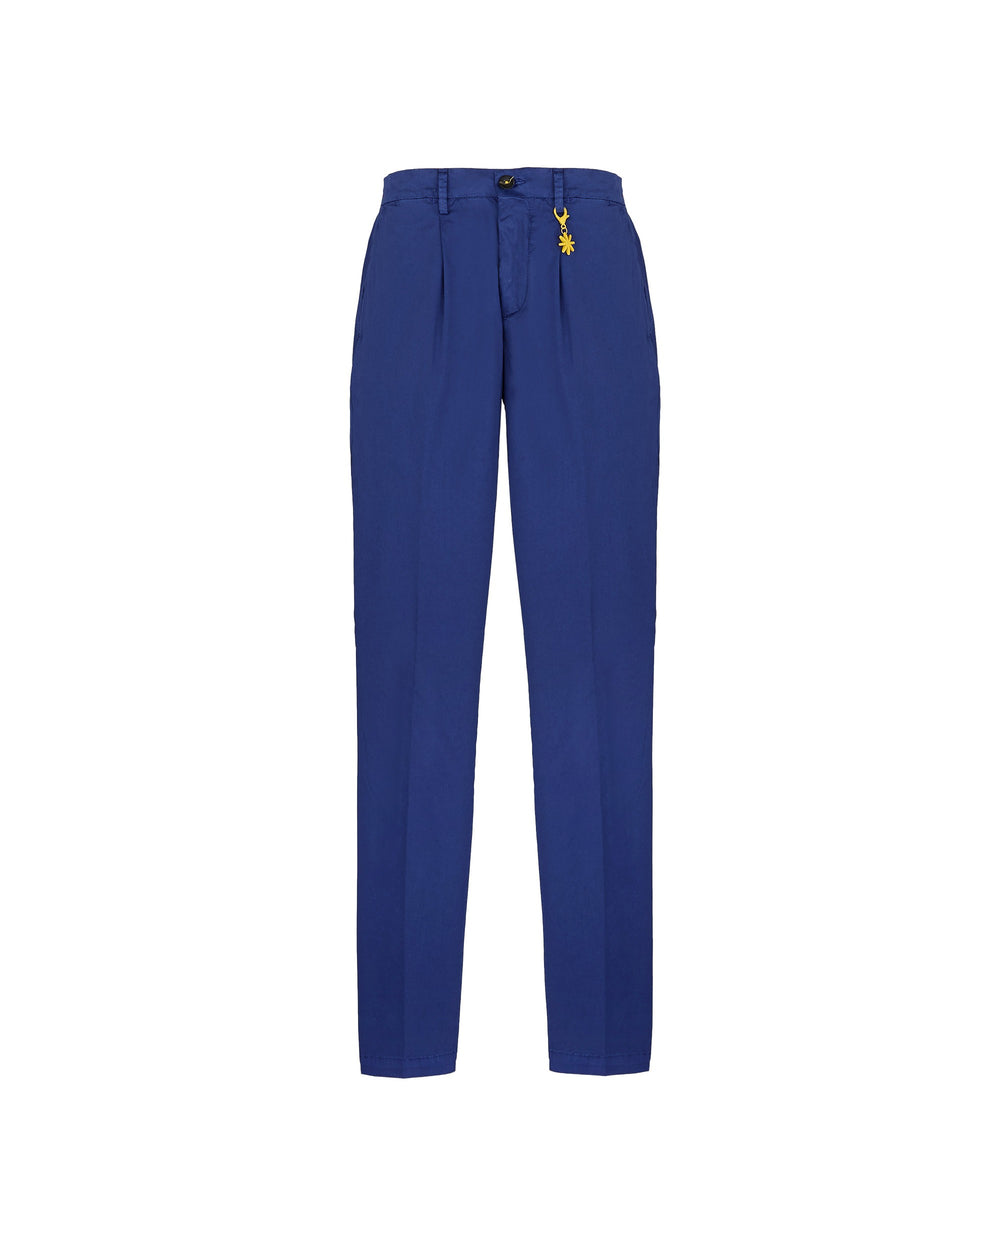 blue stretch cotton garment dyed pinces pants slim fit